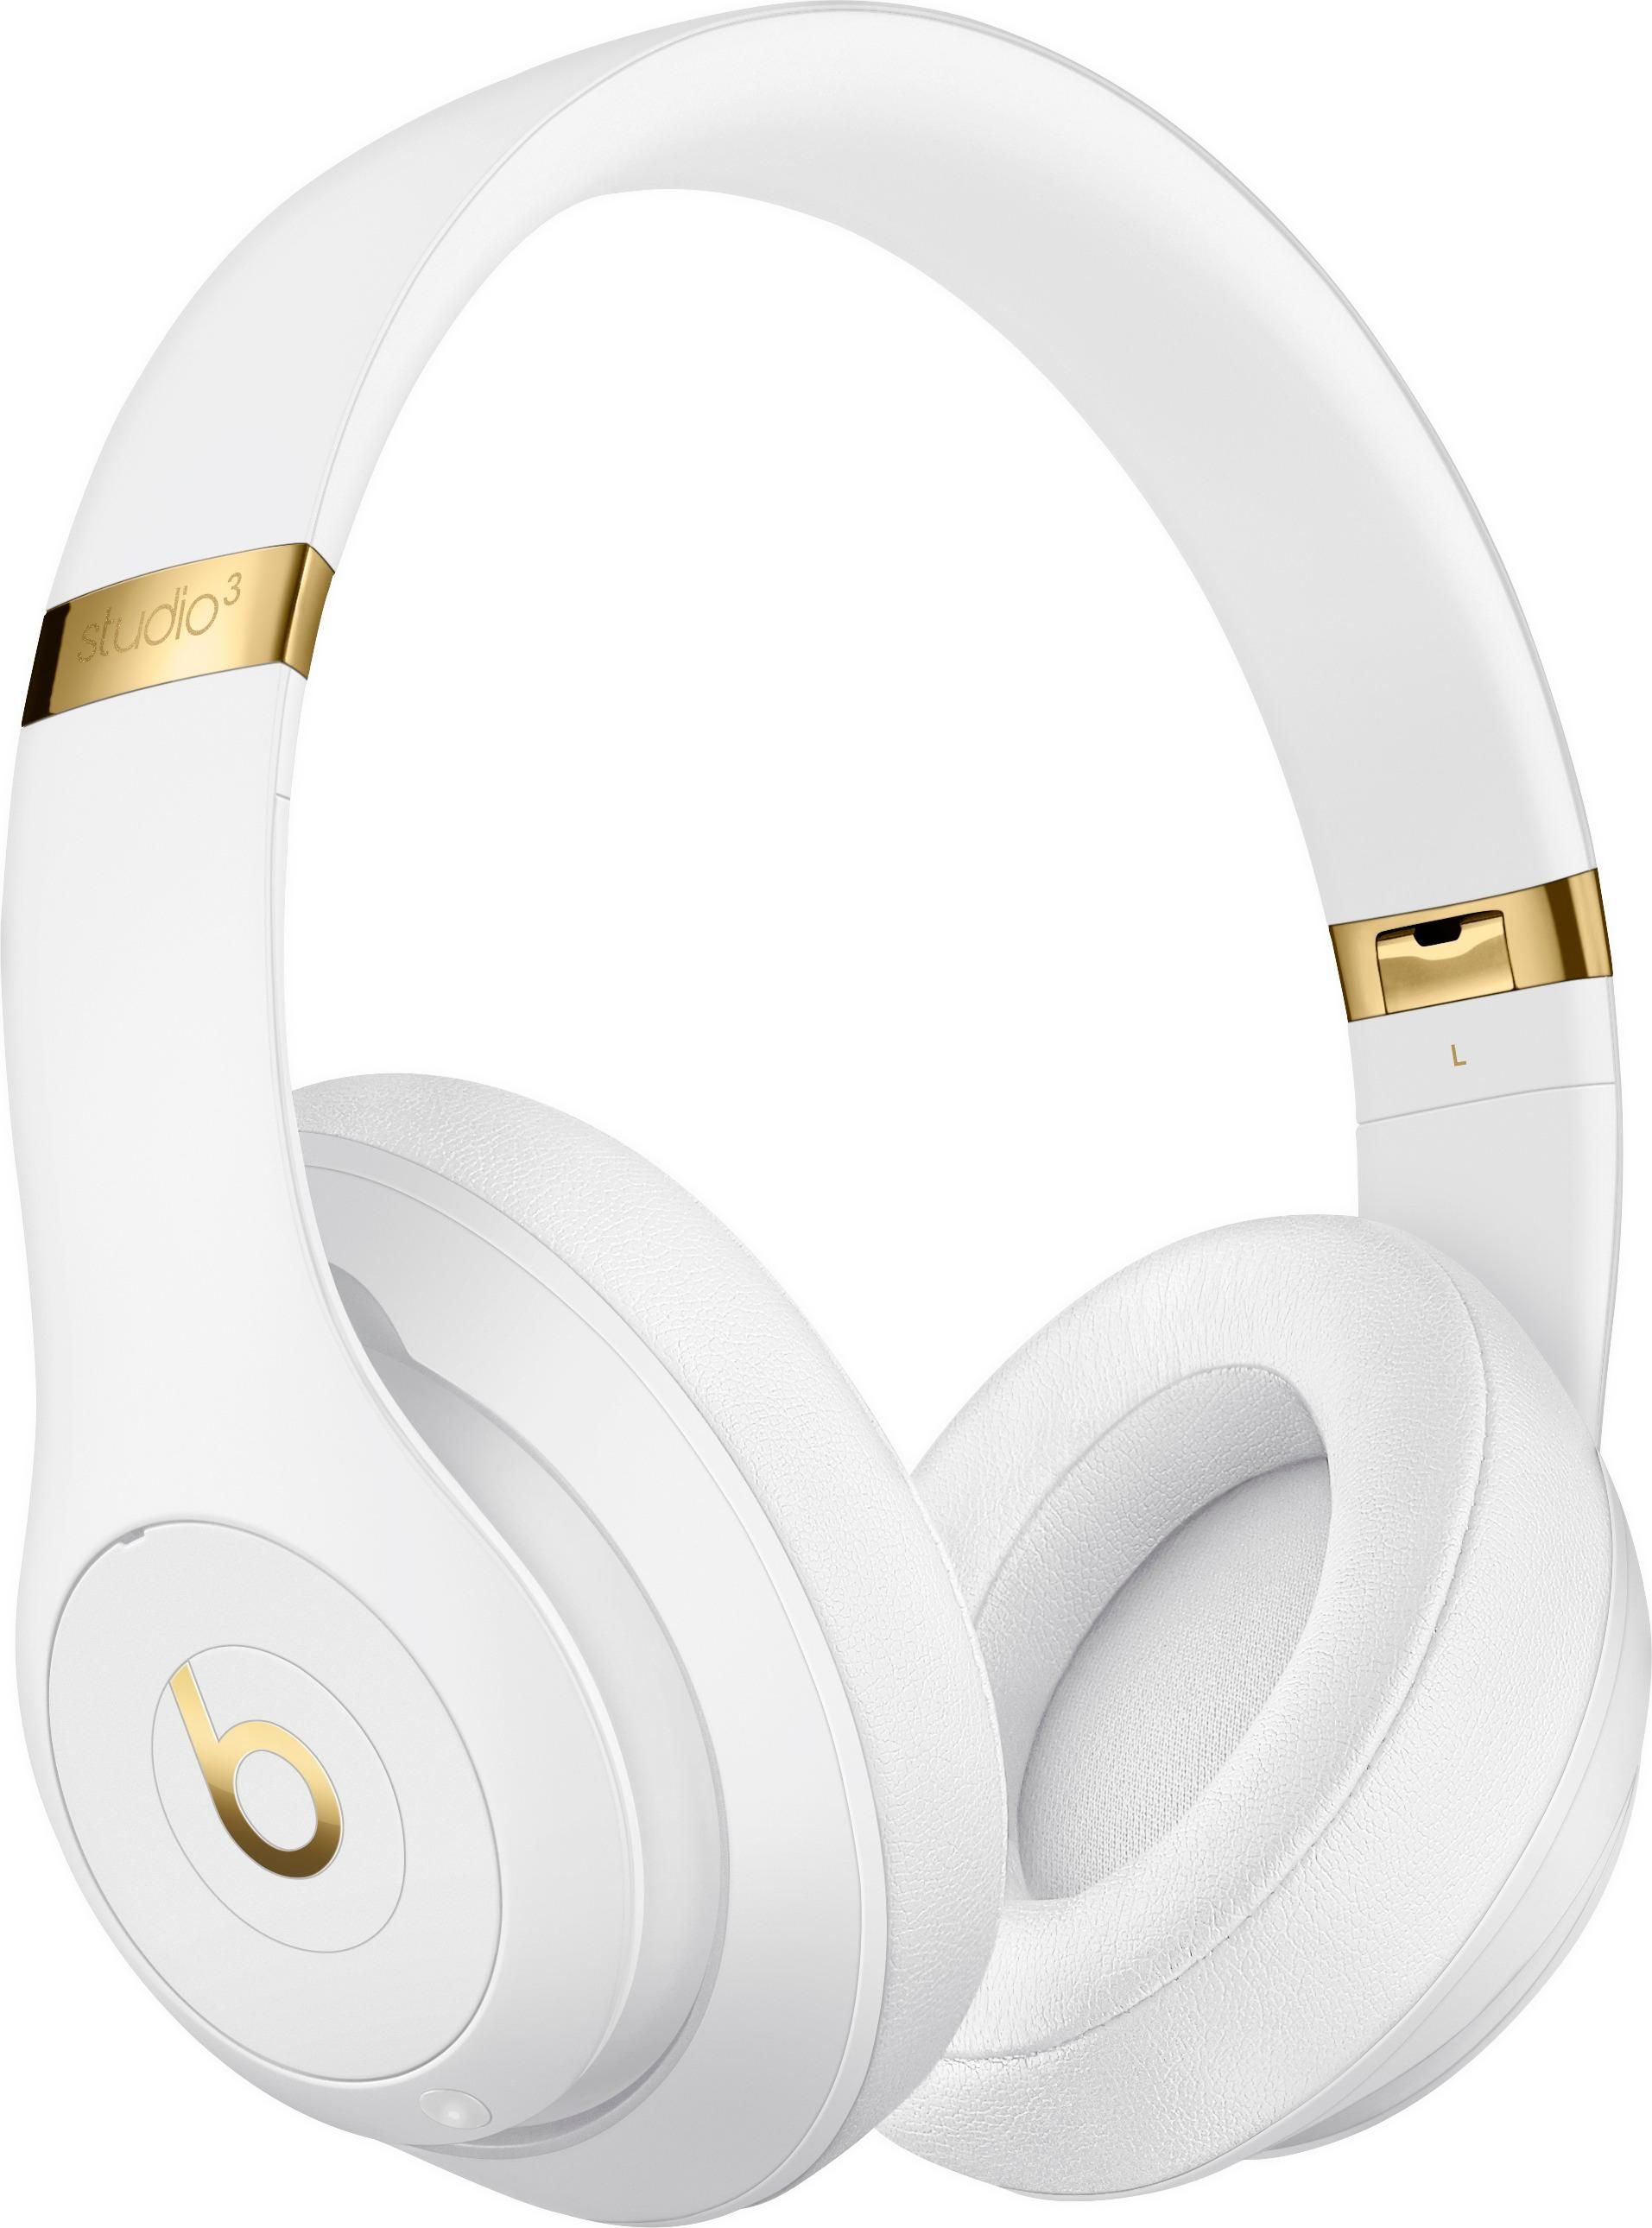 Beats by Dr. Dre Beats Studio³ Wireless Noise Canceling Headphones White MQ572LL/A - Best Buy | Best Buy U.S.